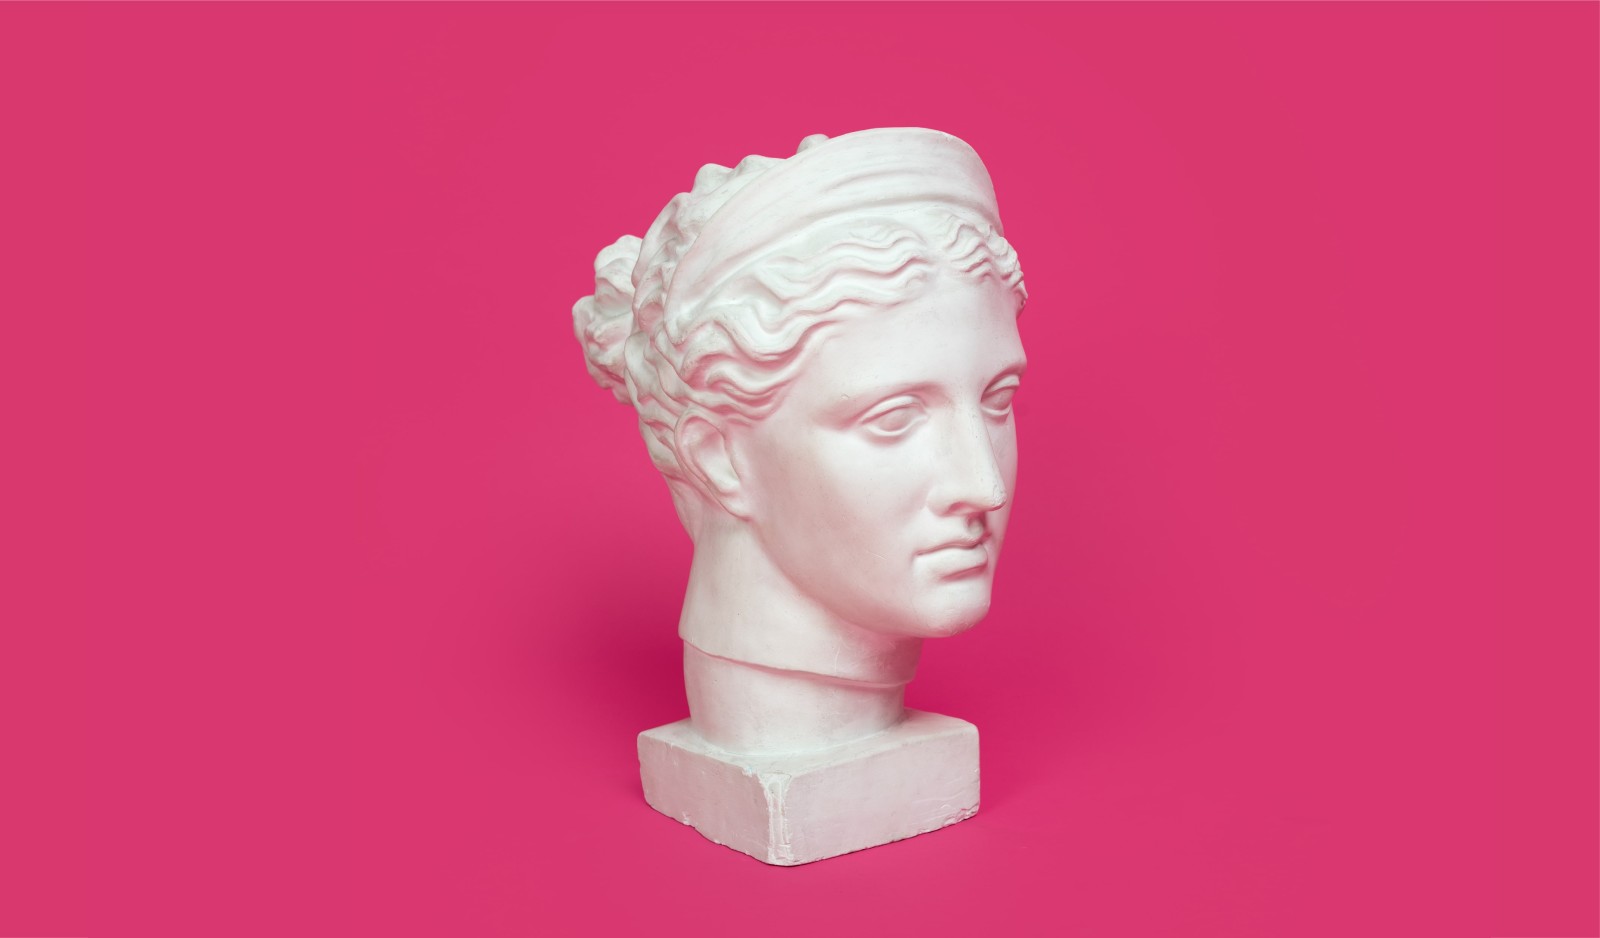 điêu khắc, nền màu hồng, cái đầu, thạch cao, diễn viên, đầu thạch cao, người đứng đầu Diana